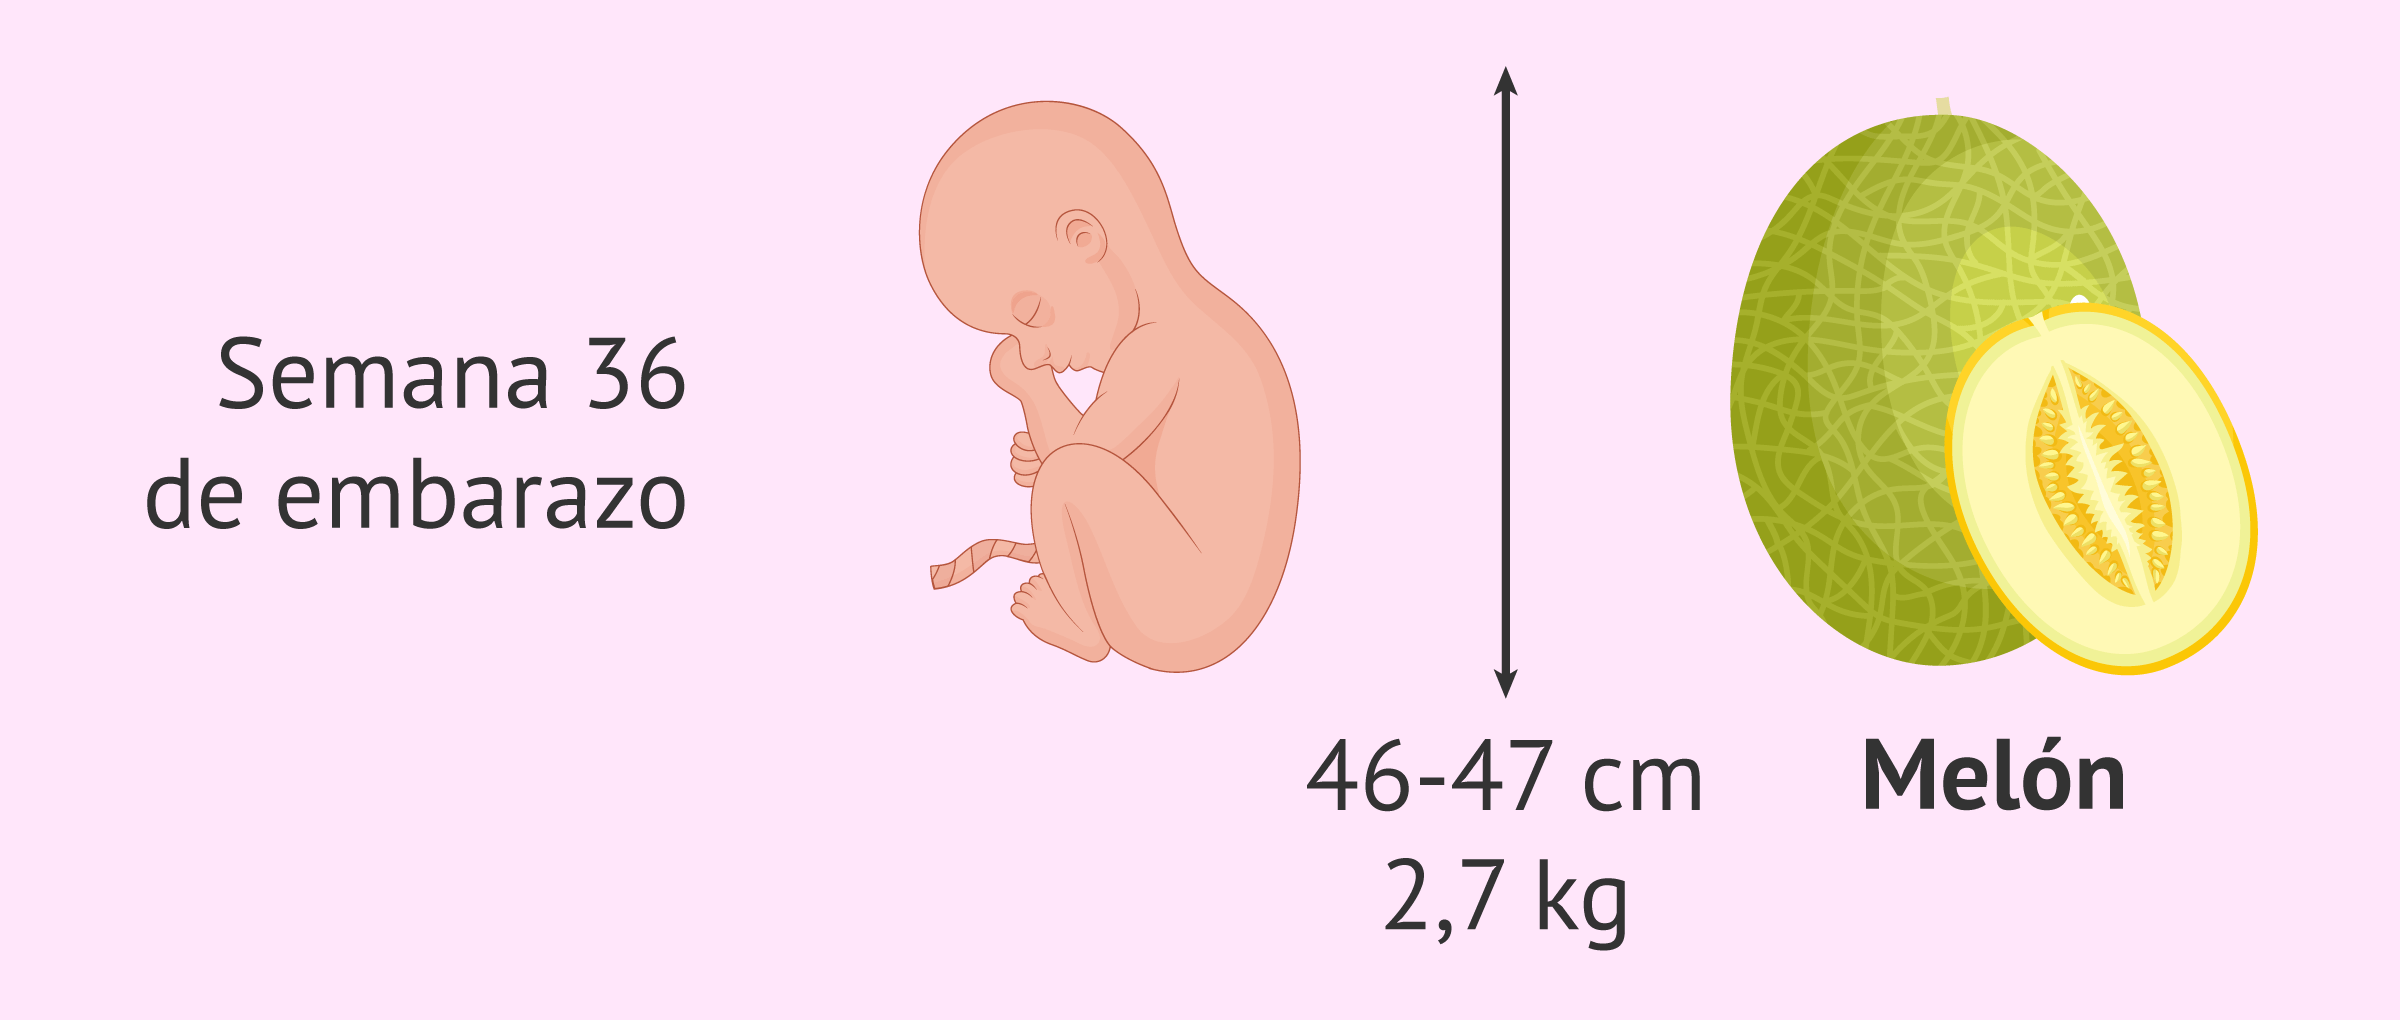 Familiarizarse mañana Perfecto Semana 36 de embarazo: cambios en el bebé y síntomas en la madre